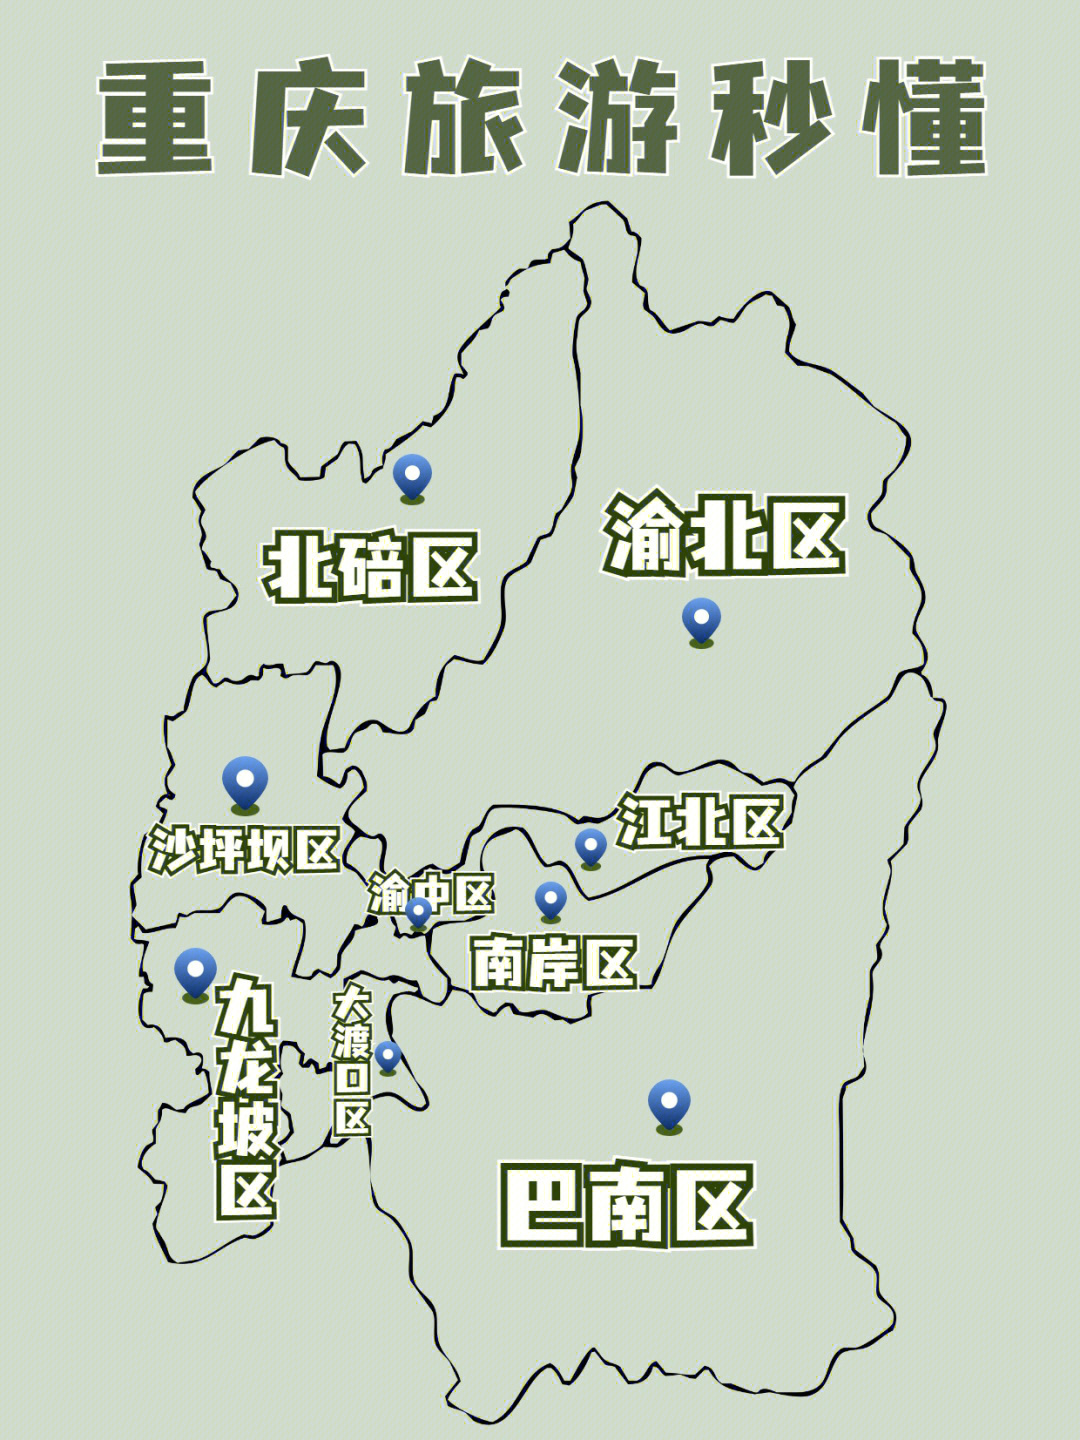 重庆街景地图图片